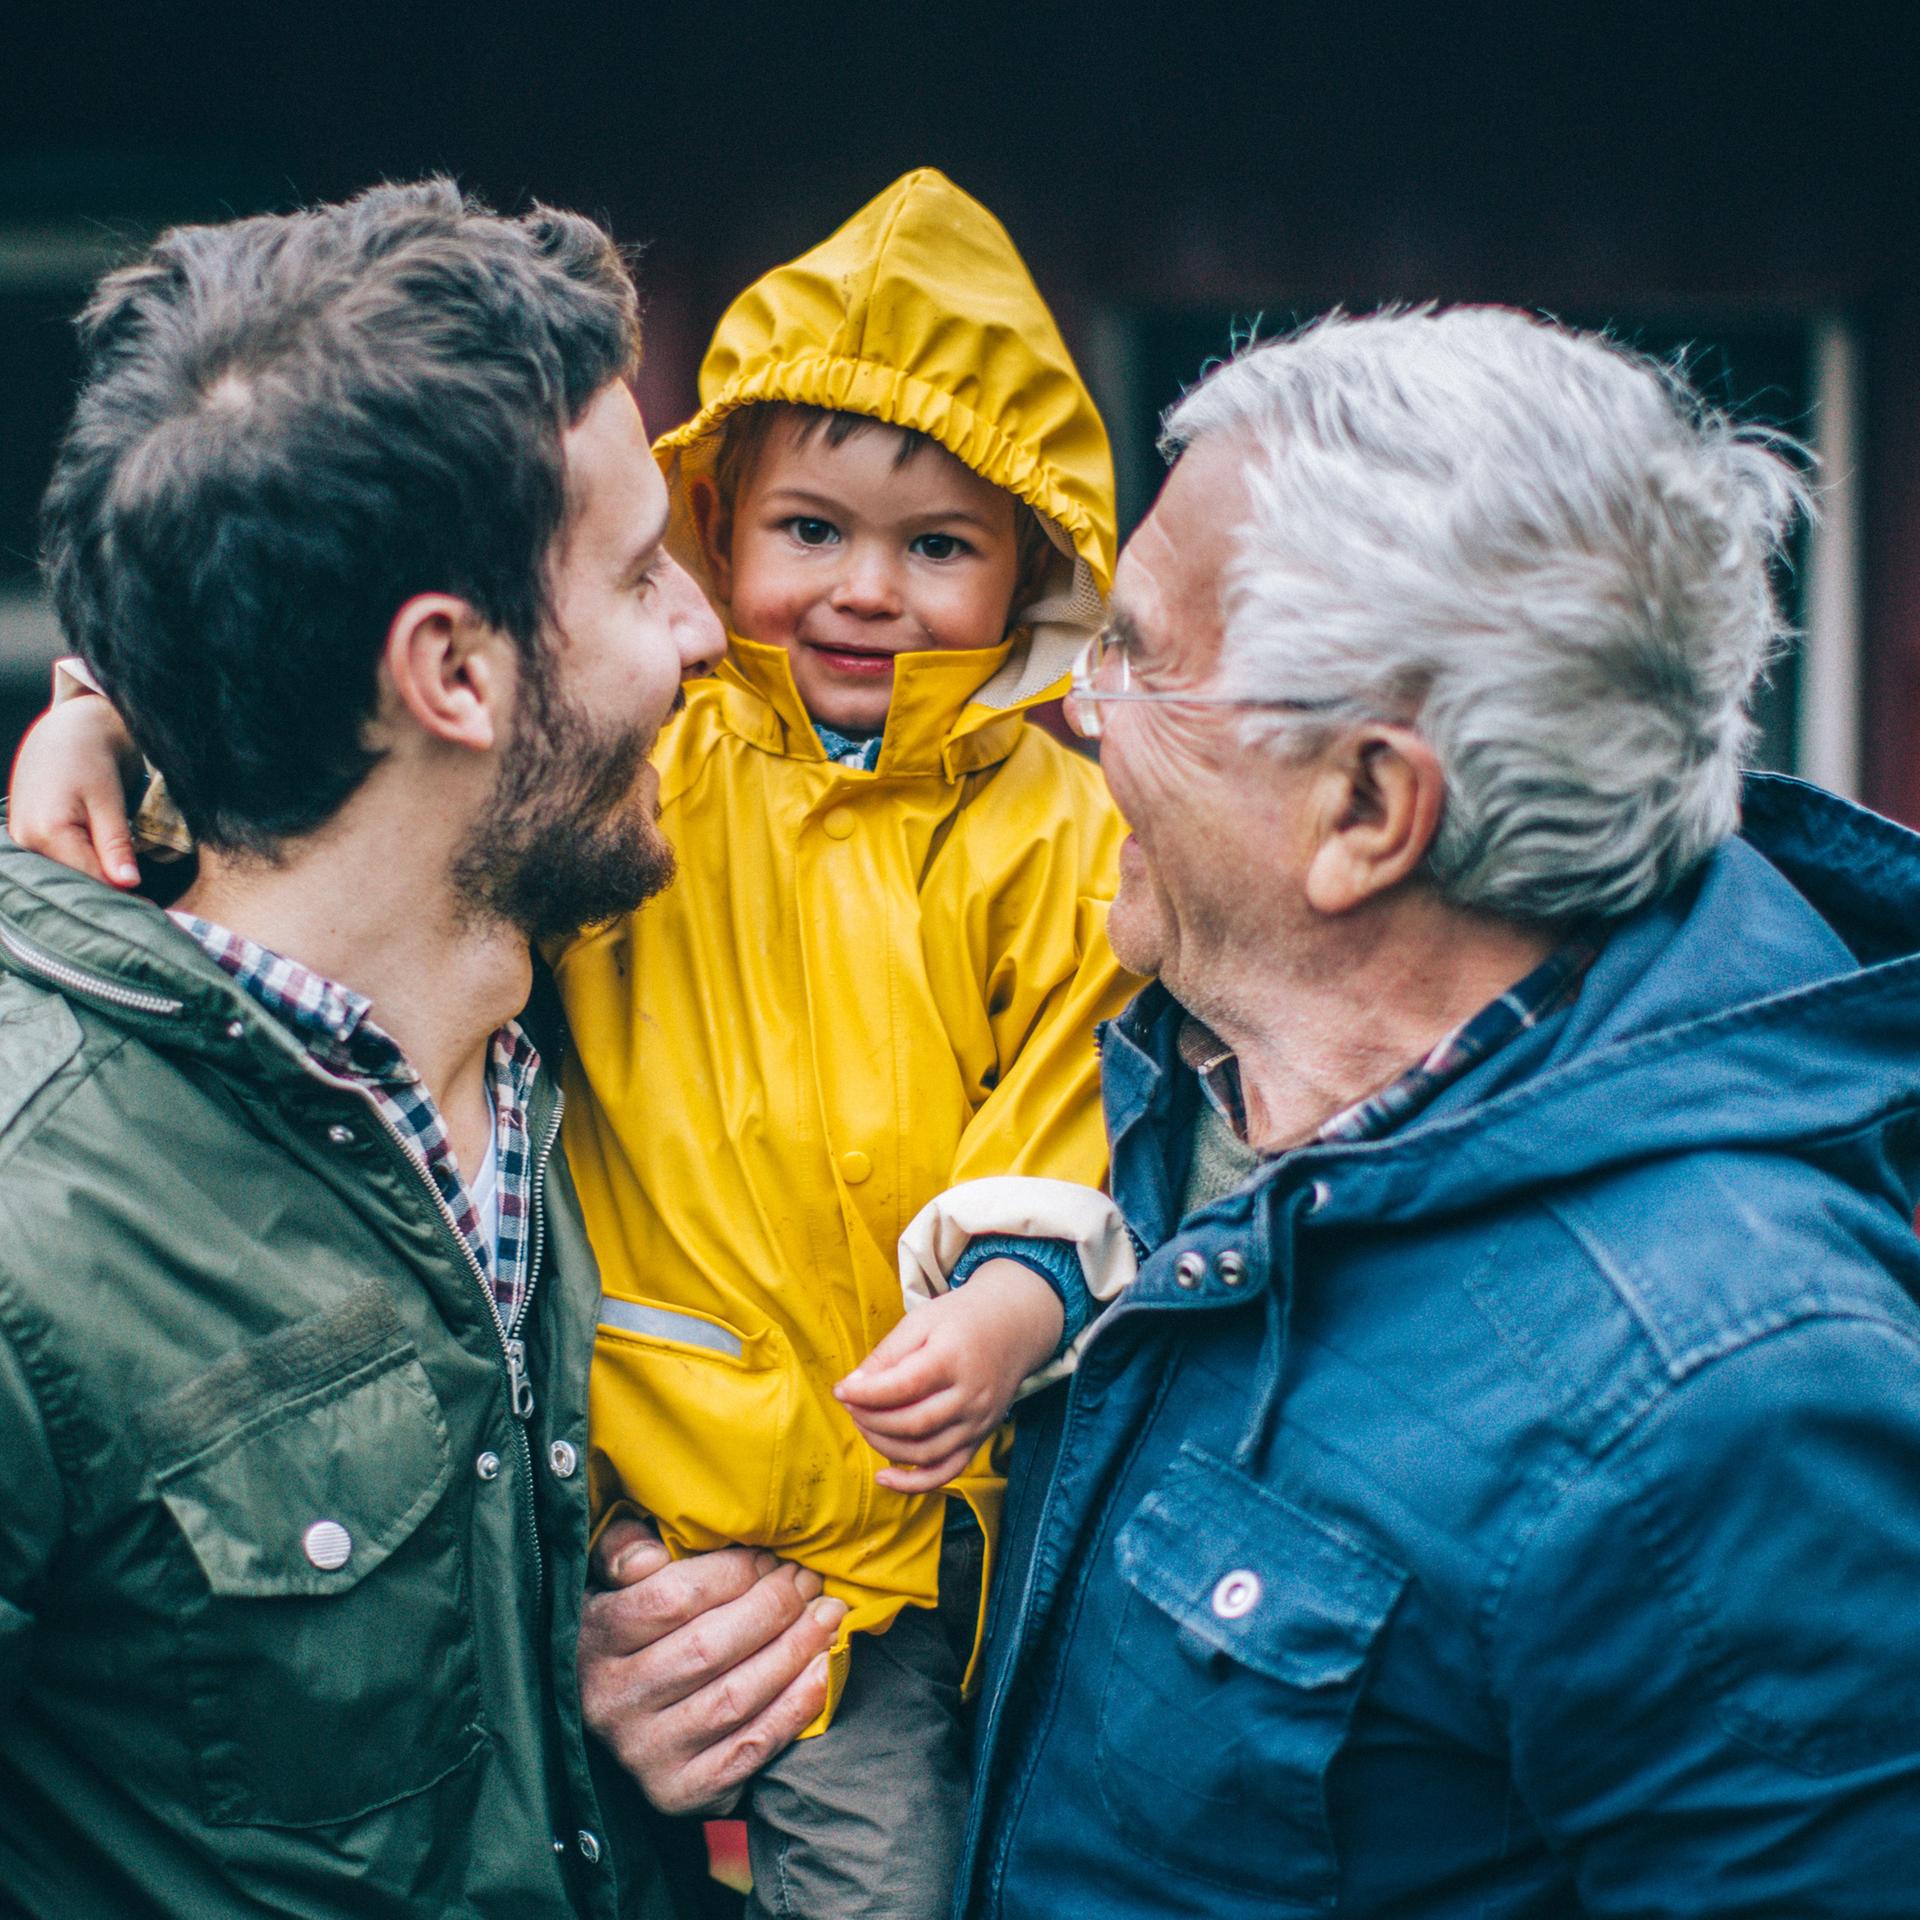 Ein Vater und ein Großvater tragen einen kleinen Jungen auf dem Arm - der Junge lacht in die Kamera, die beiden Erwachsenen lachen den Jungen an.
